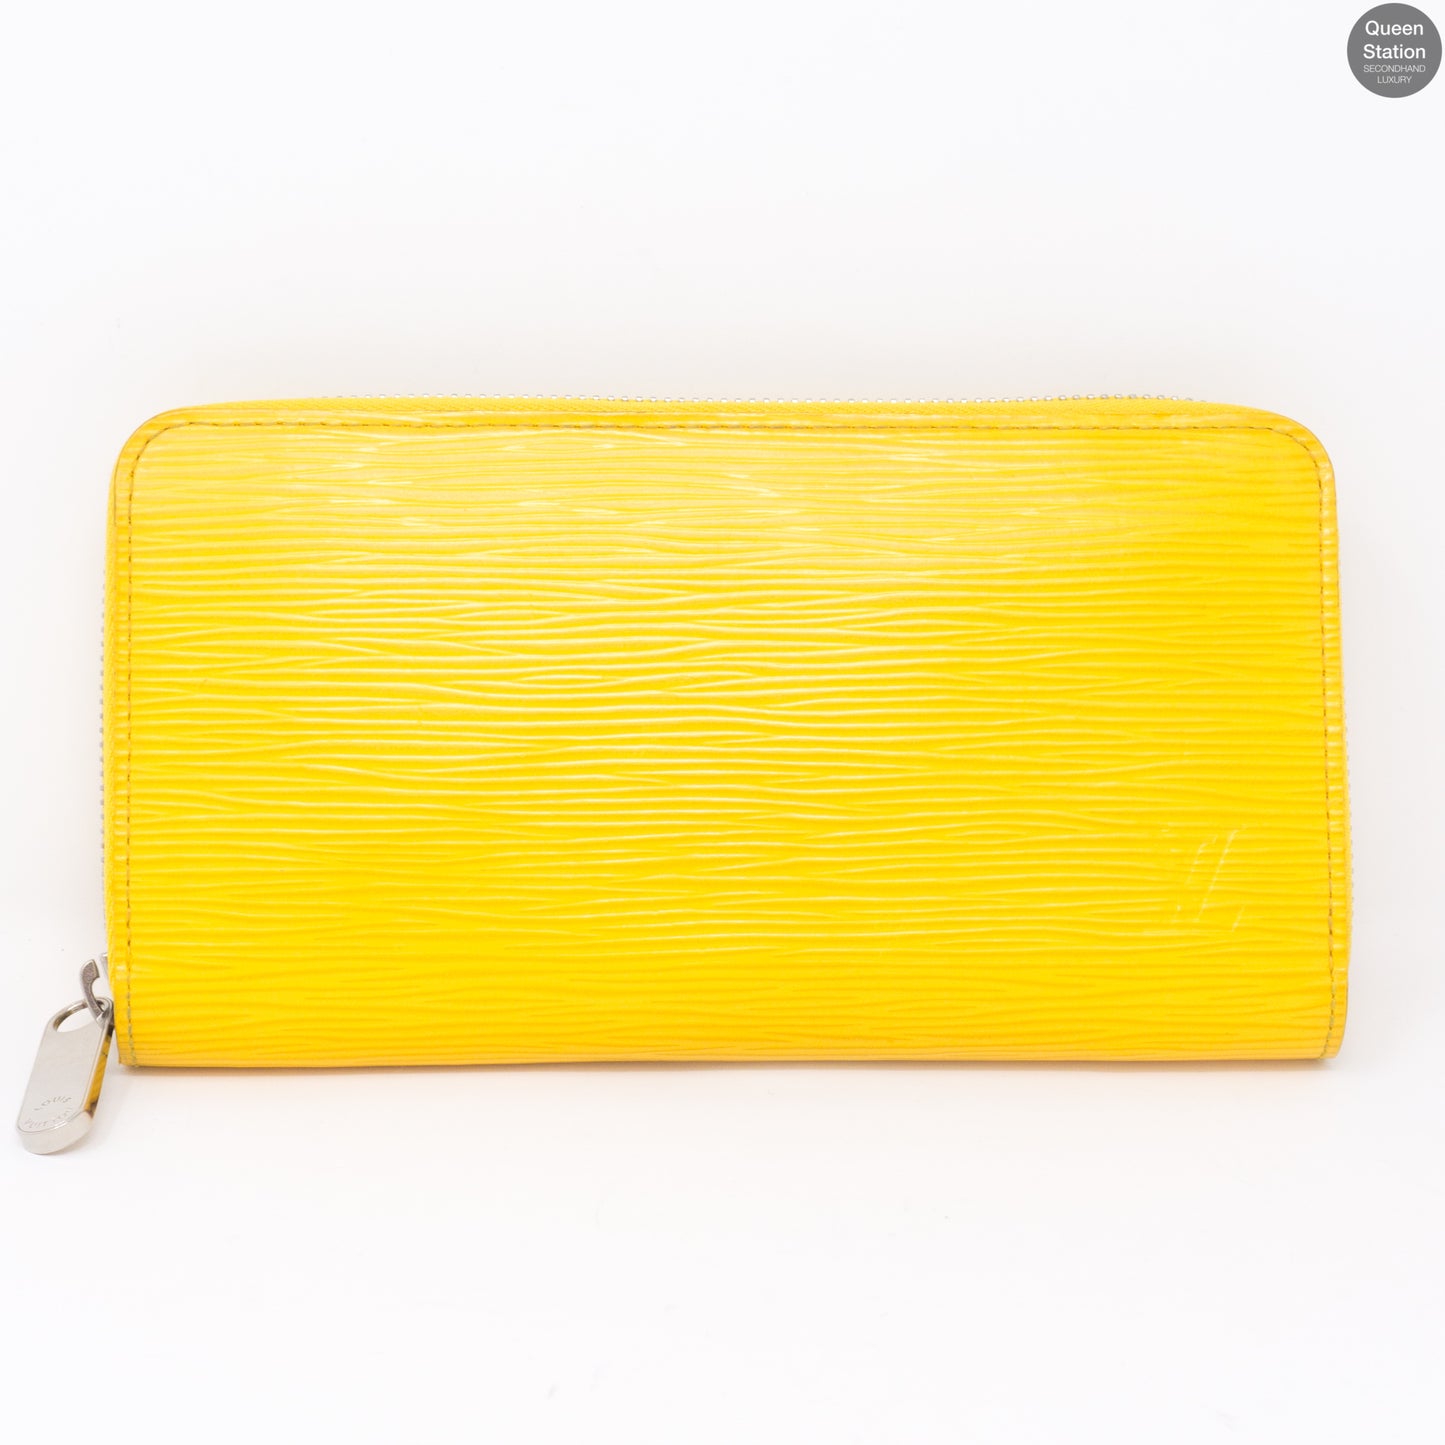 Zippy Yellow Epi Leather Wallet